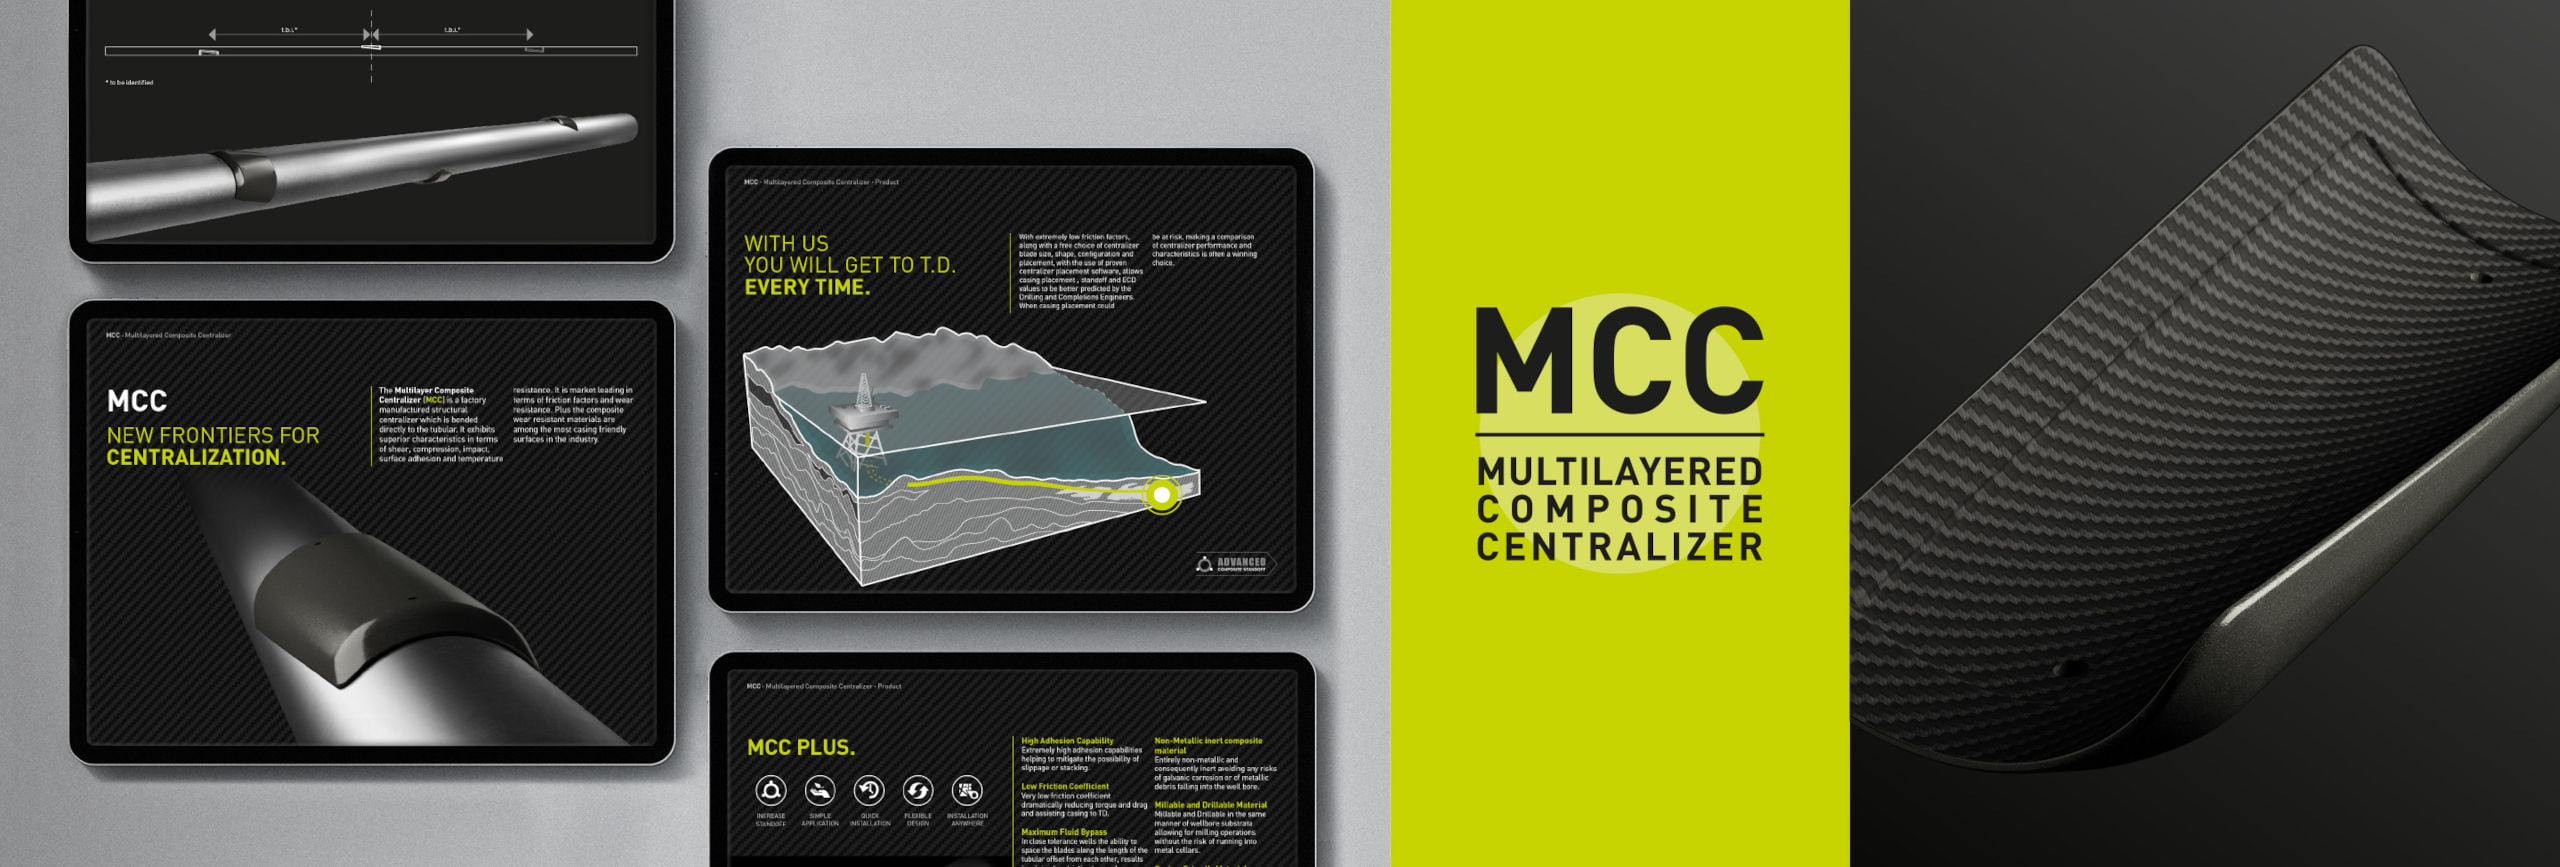 MCC di Maxwell Oil Tools Un progetto di comunicazione per un centralizzatore di pozzo petrolifero